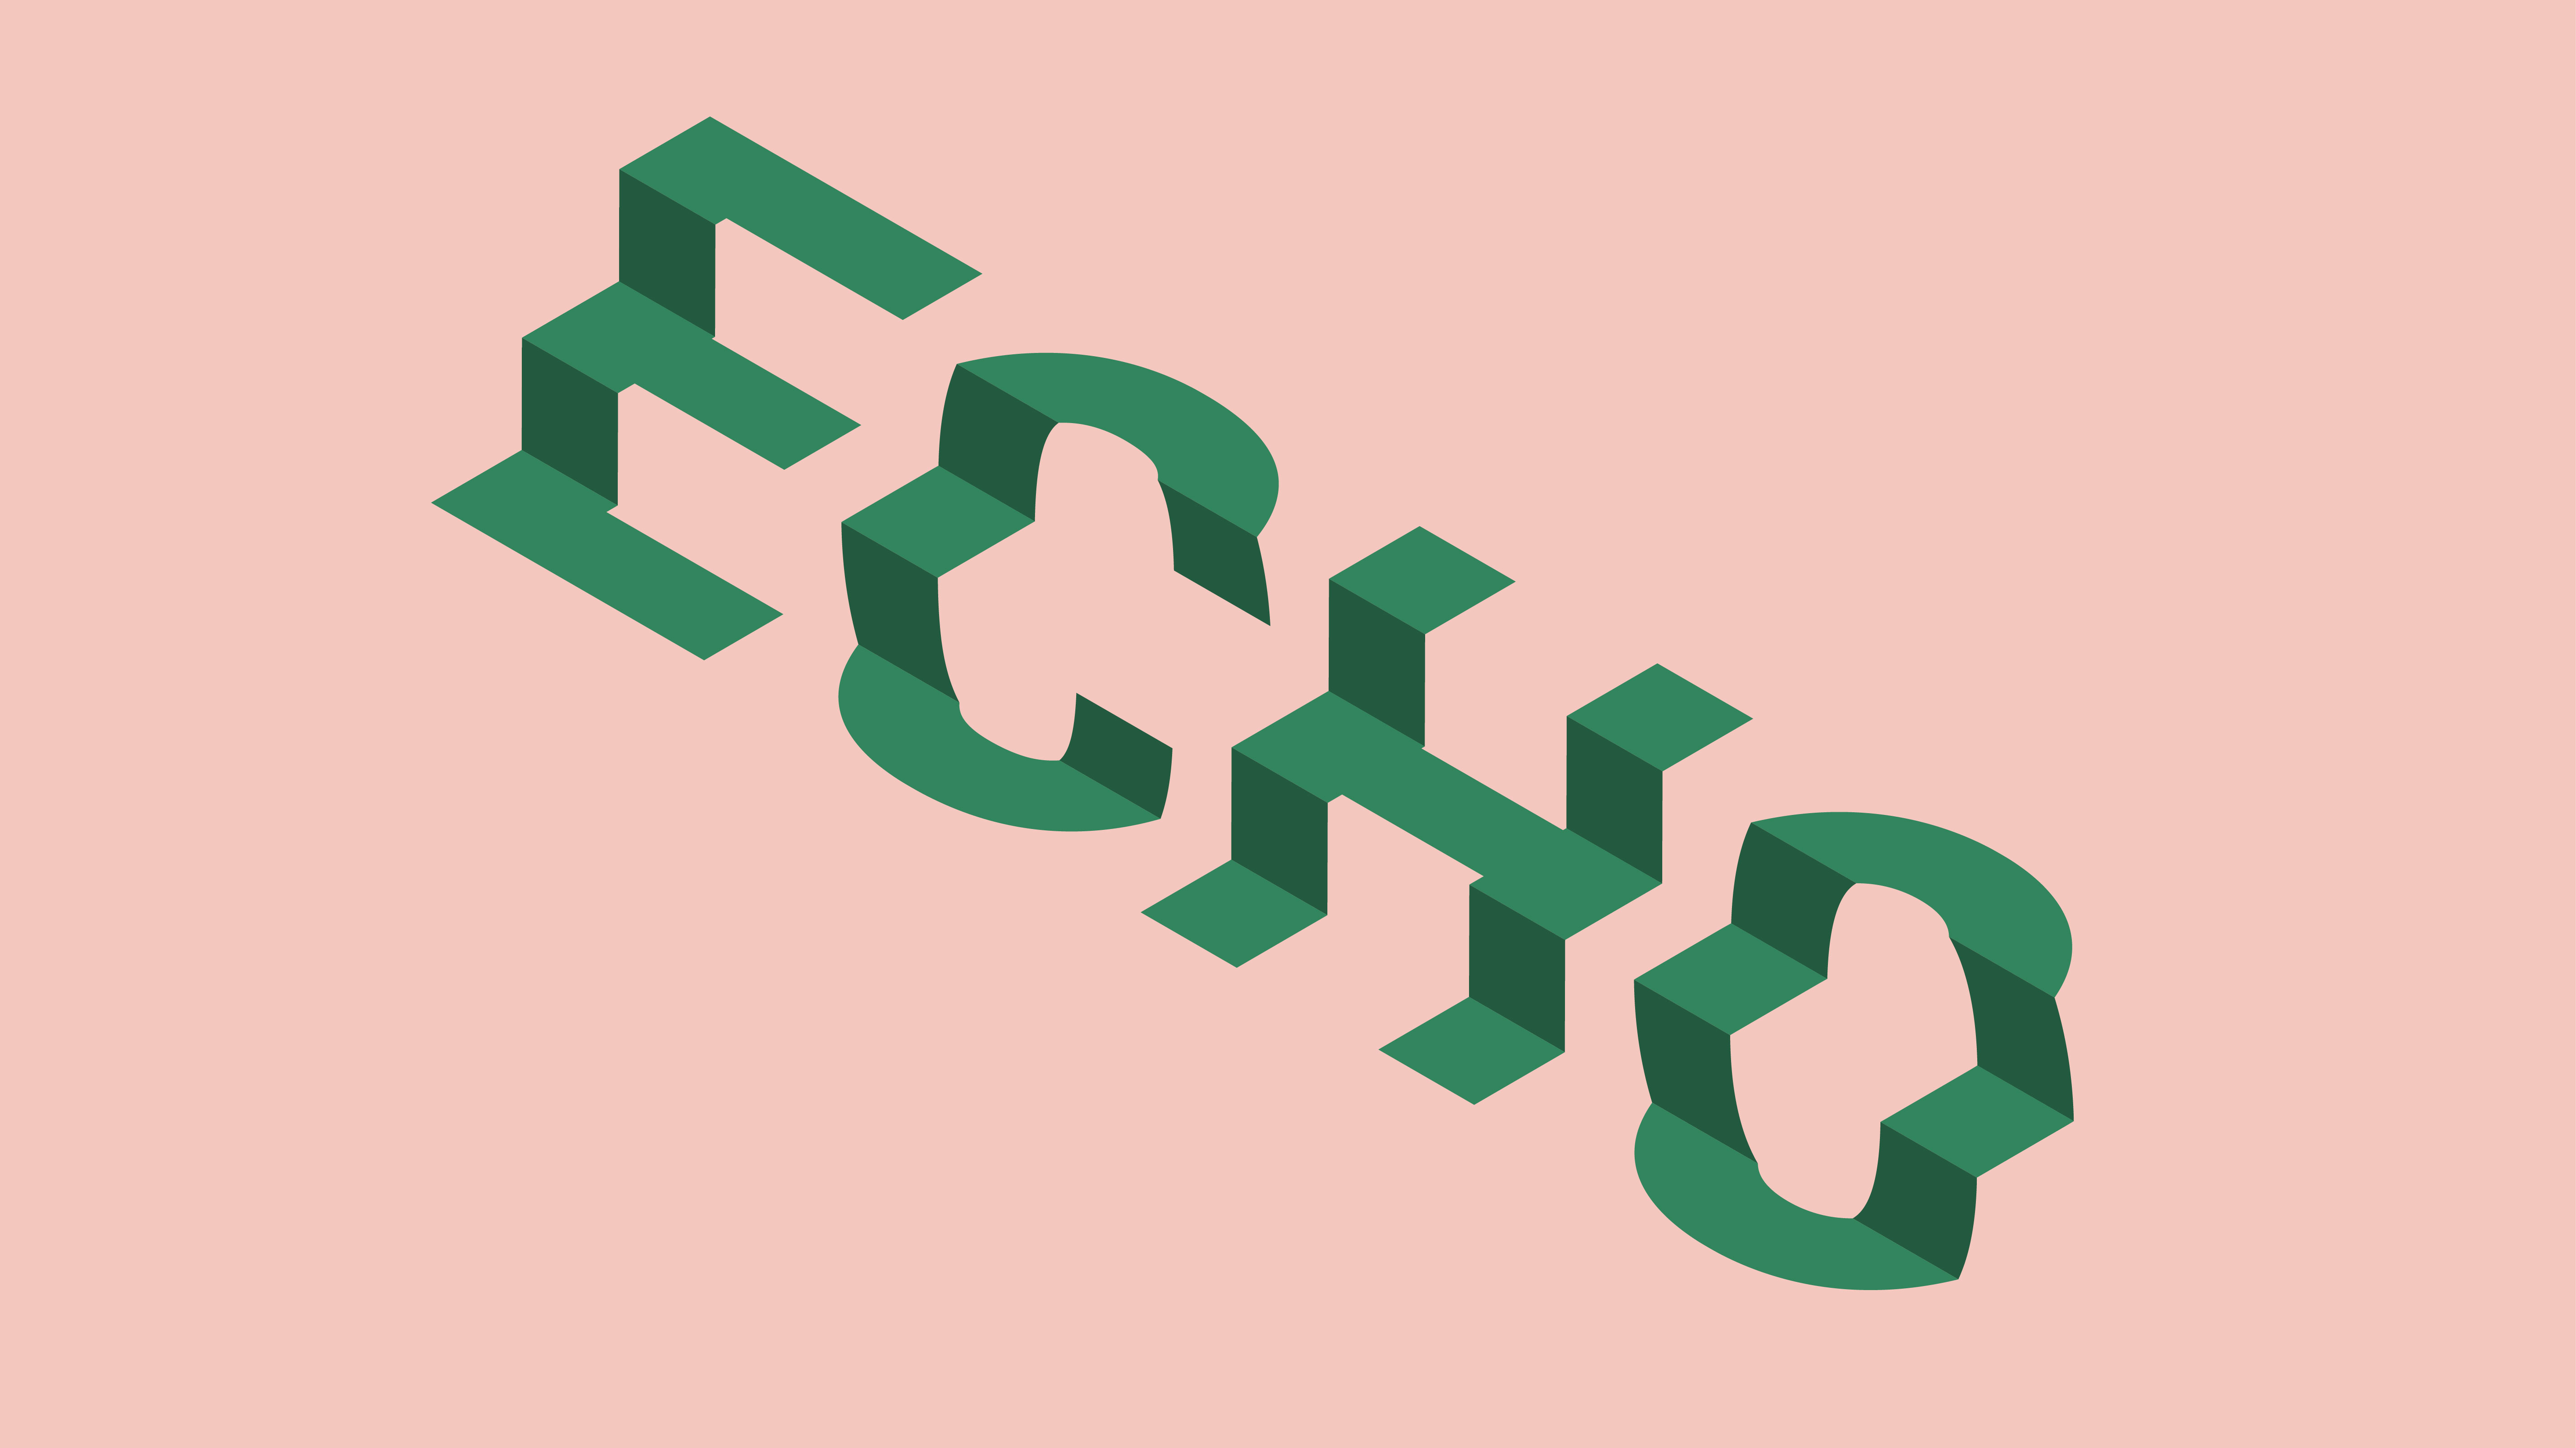 立体字，用PS做简单的立体效果的字体(4) - 3D立体字 - PS教程自学网